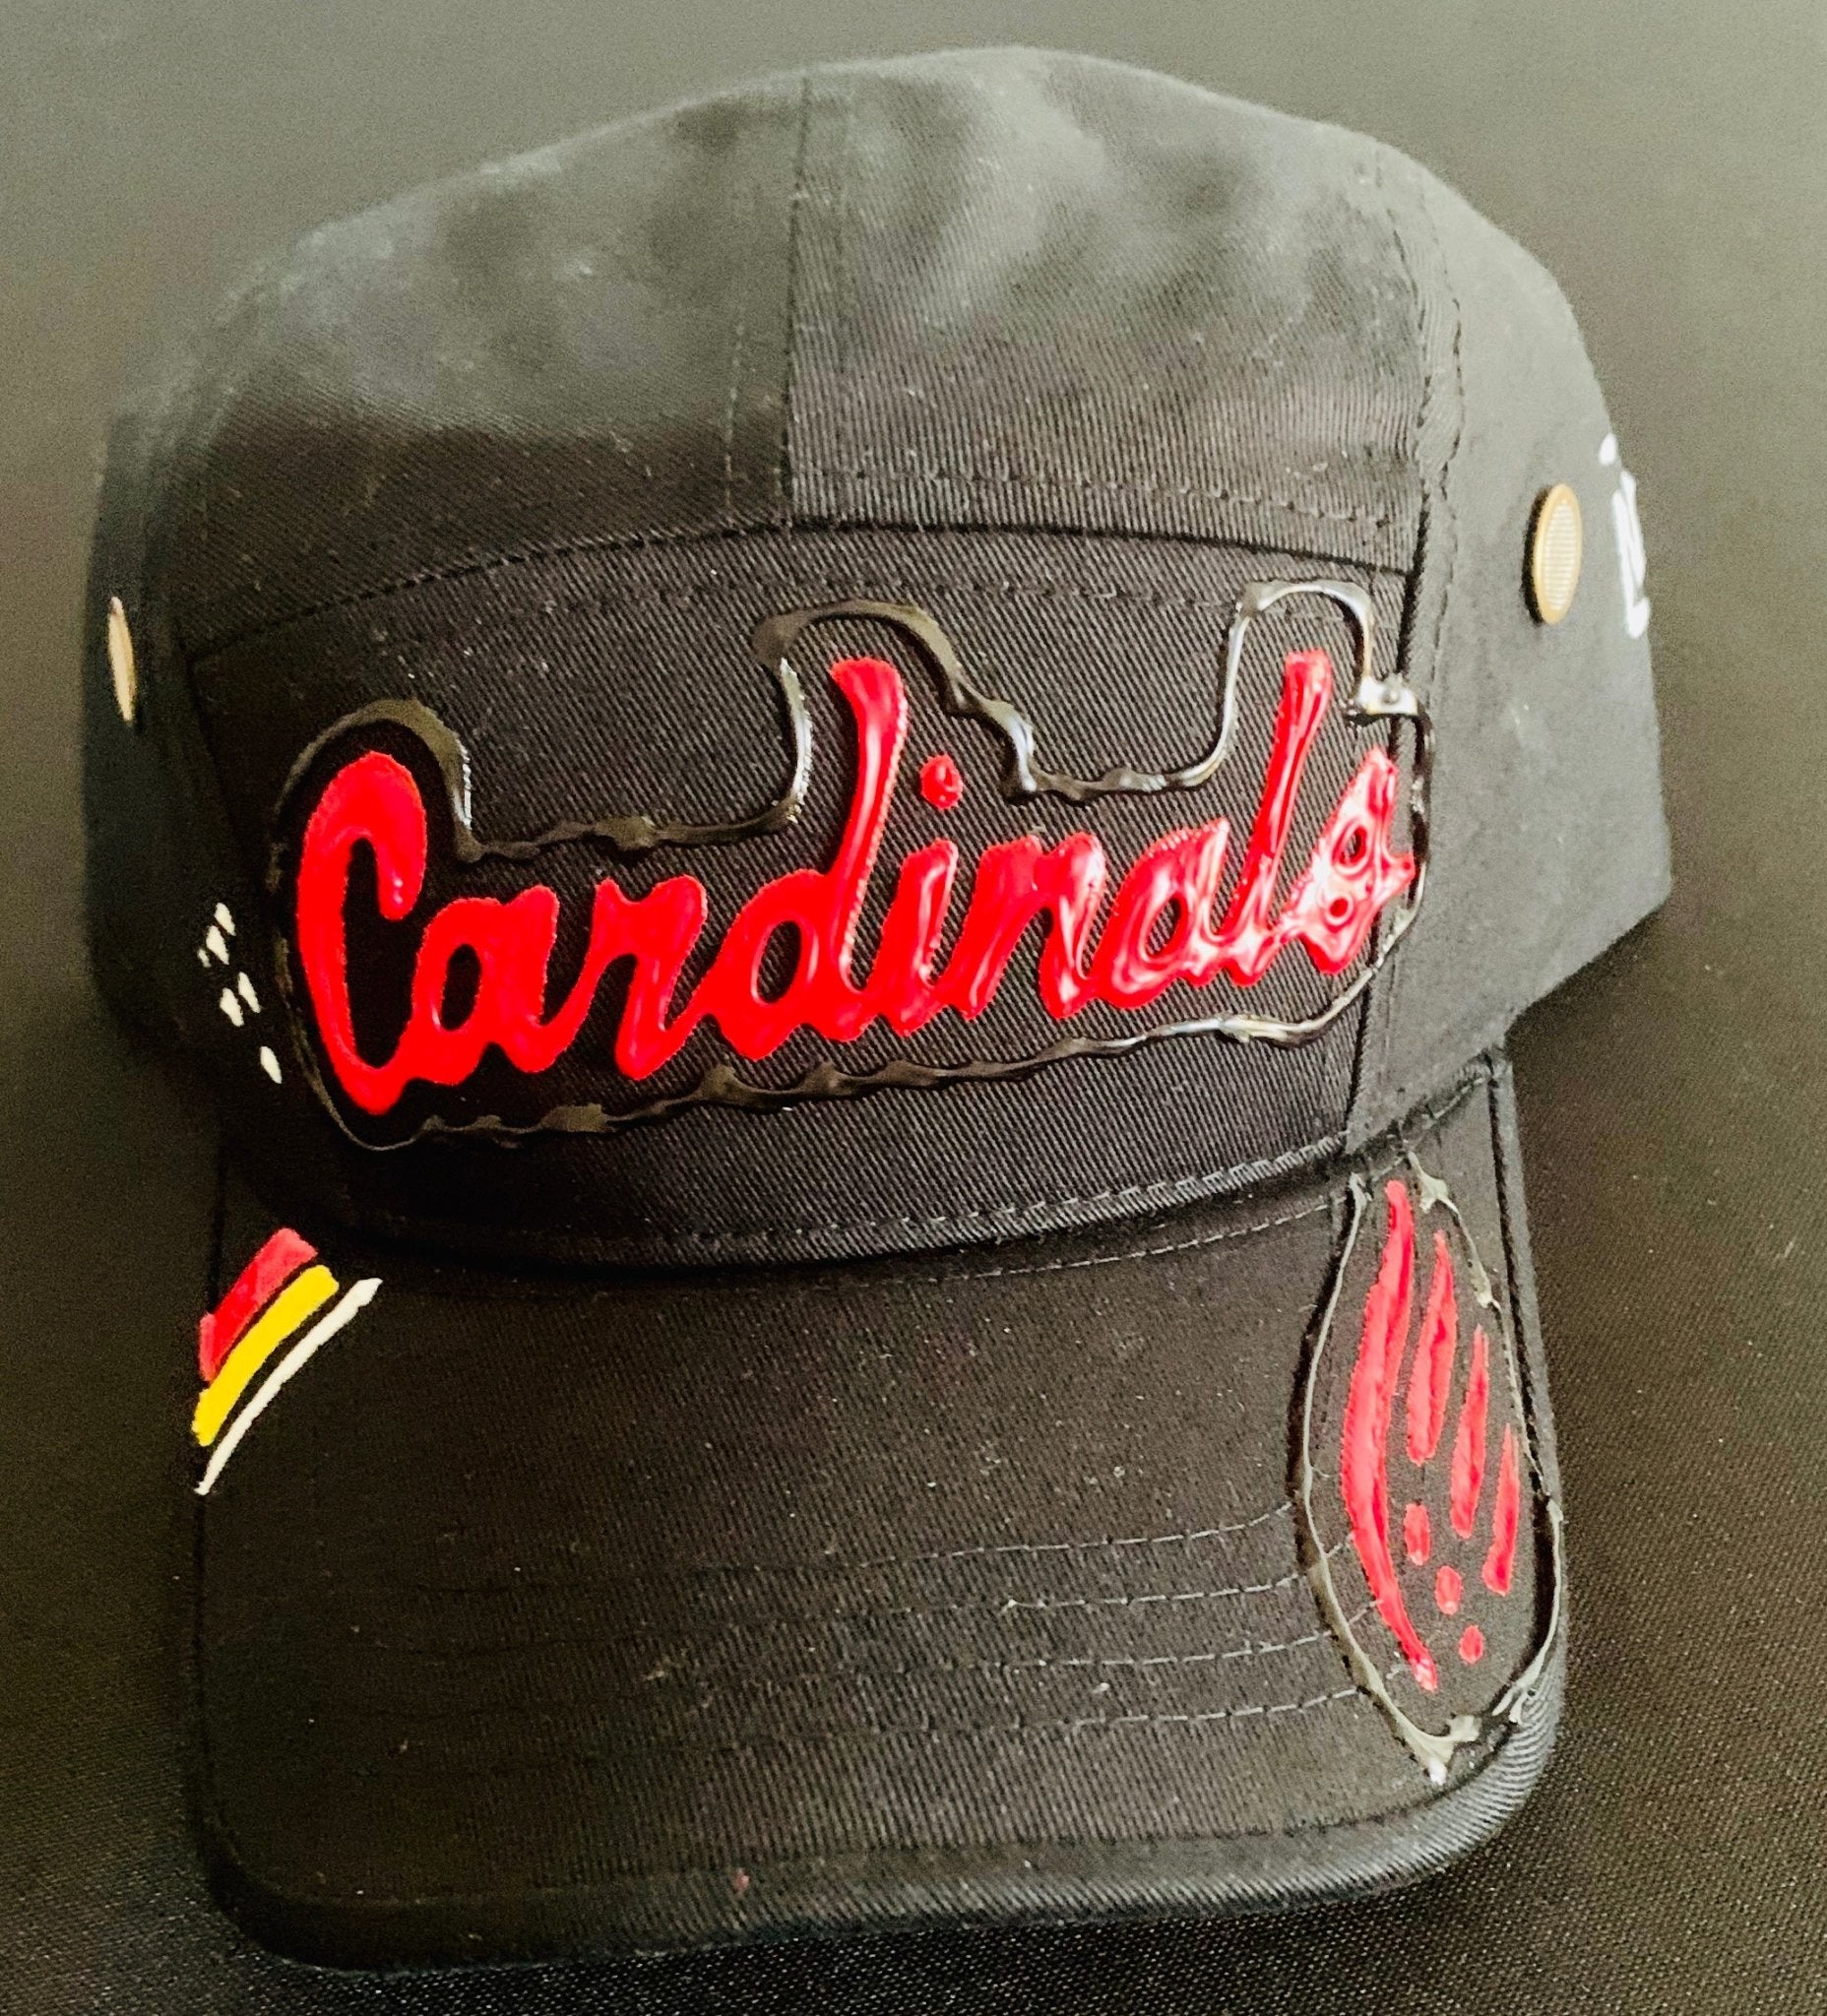 Louisville Cardinals Gear, Hats and Apparel, Louisville Cardinals